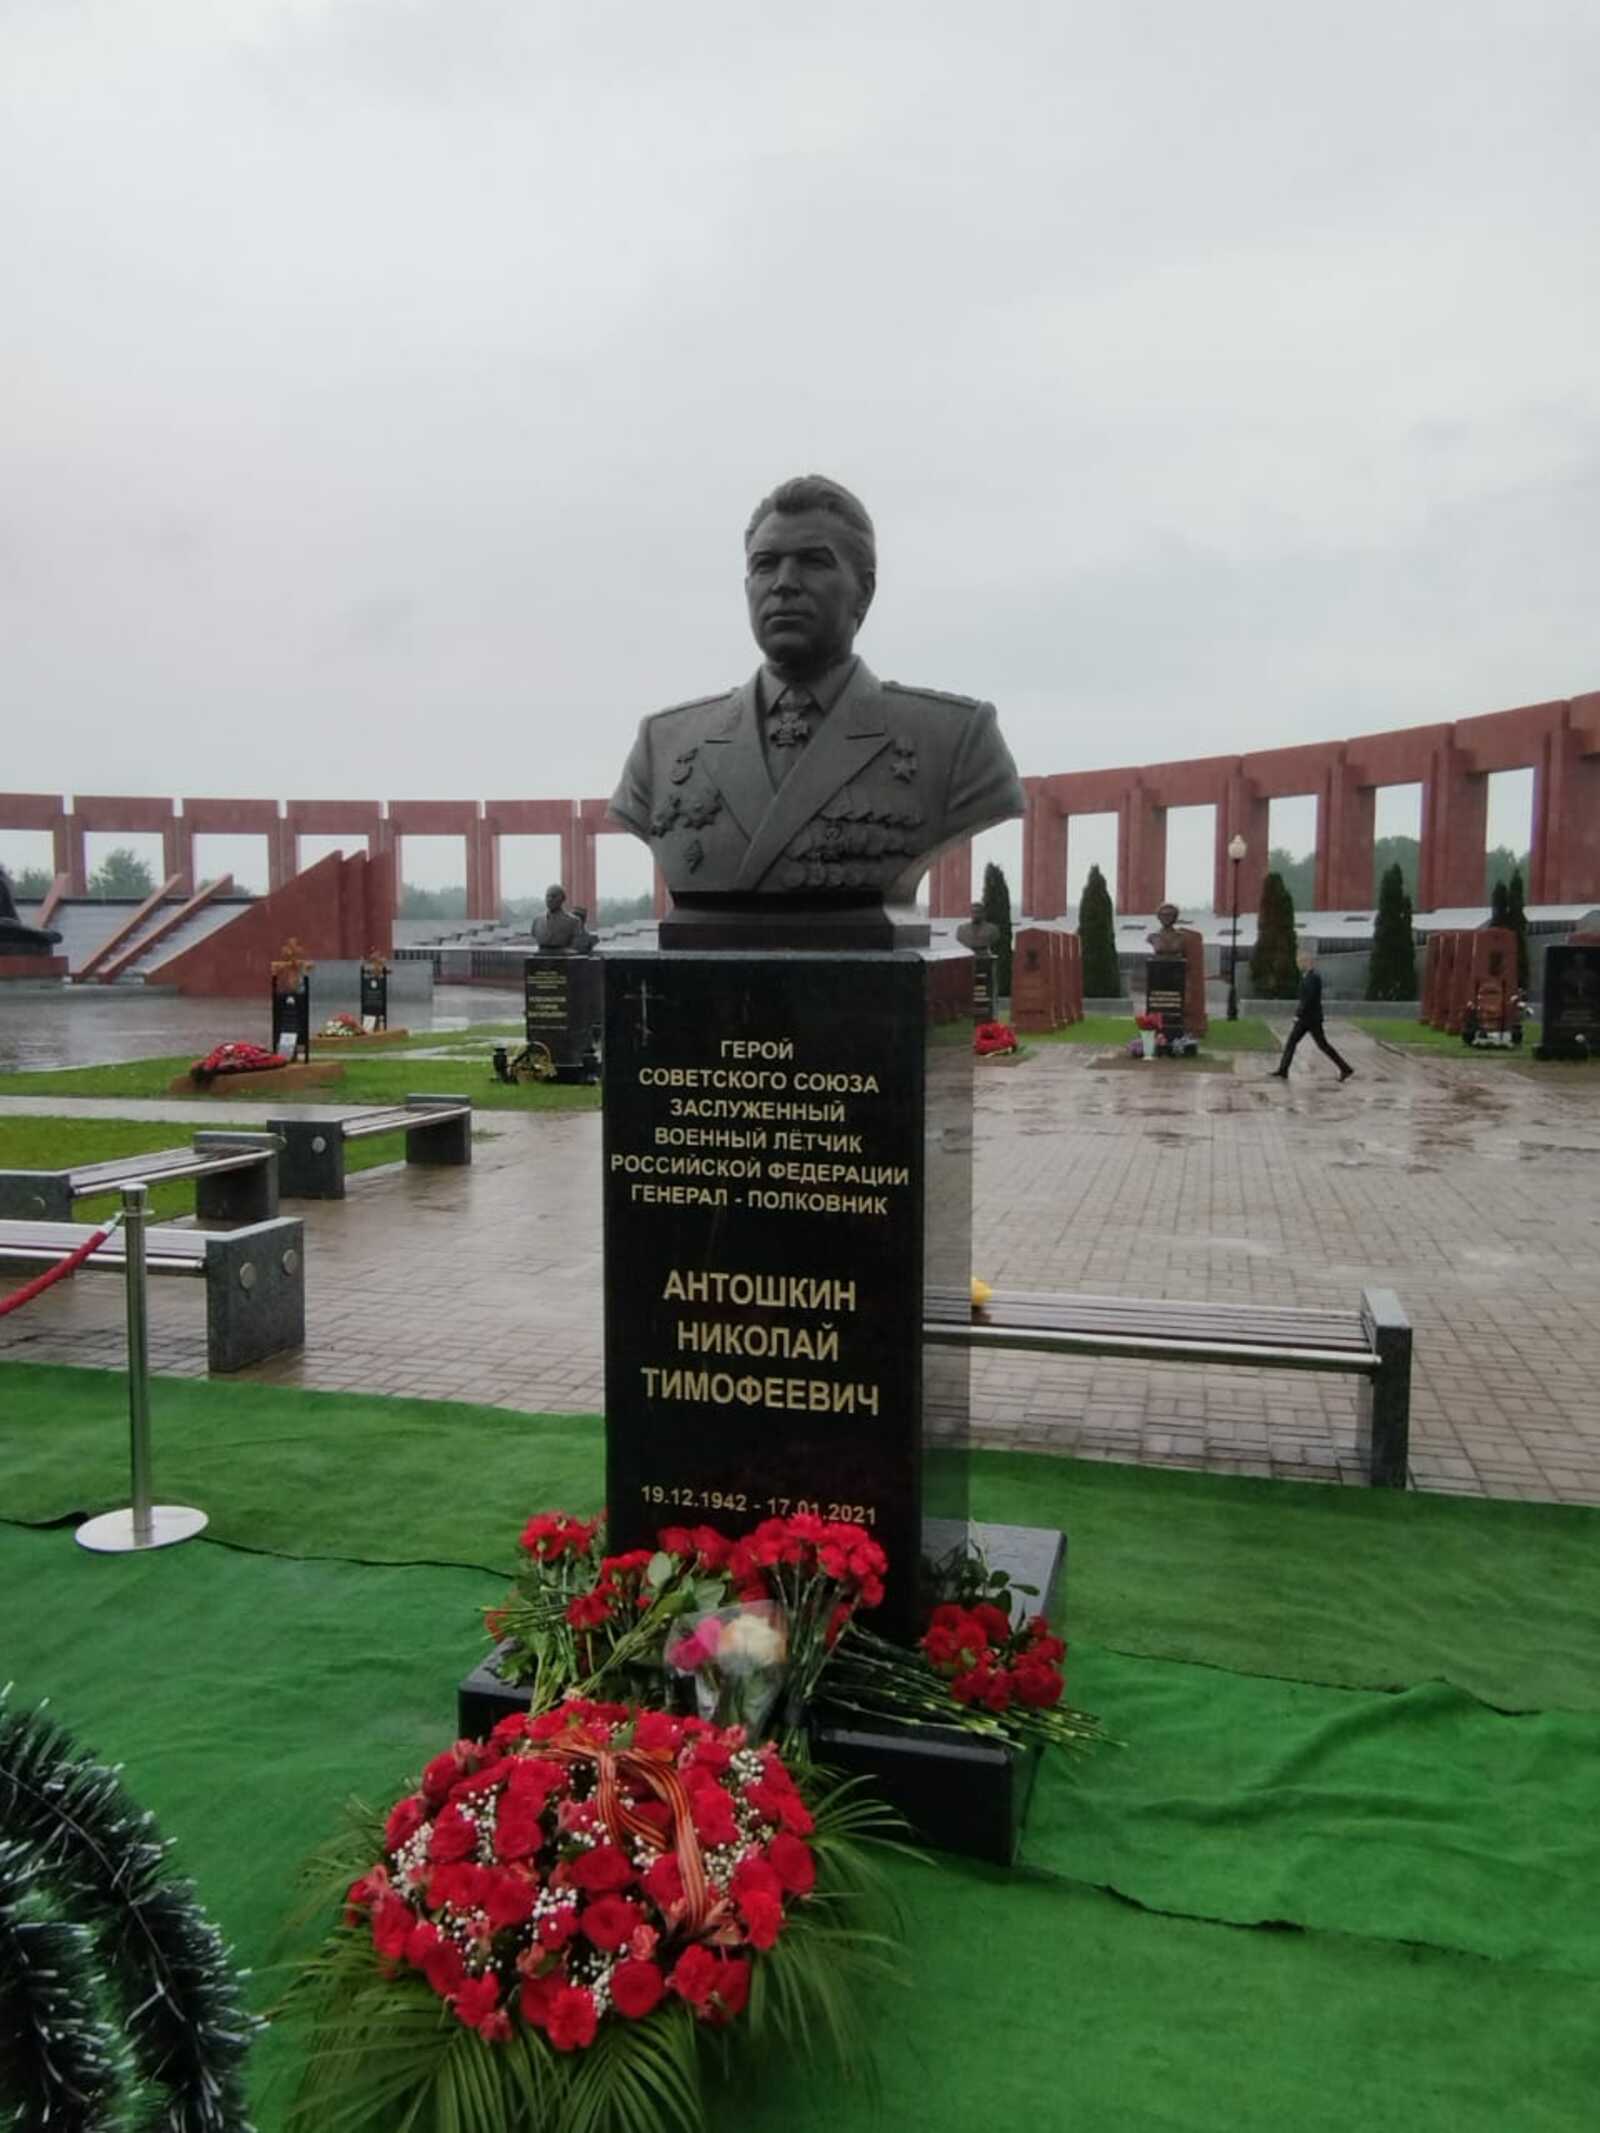 В Мытищах открыли памятник нашему земляку Антошкину Николаю Тимофеевичу